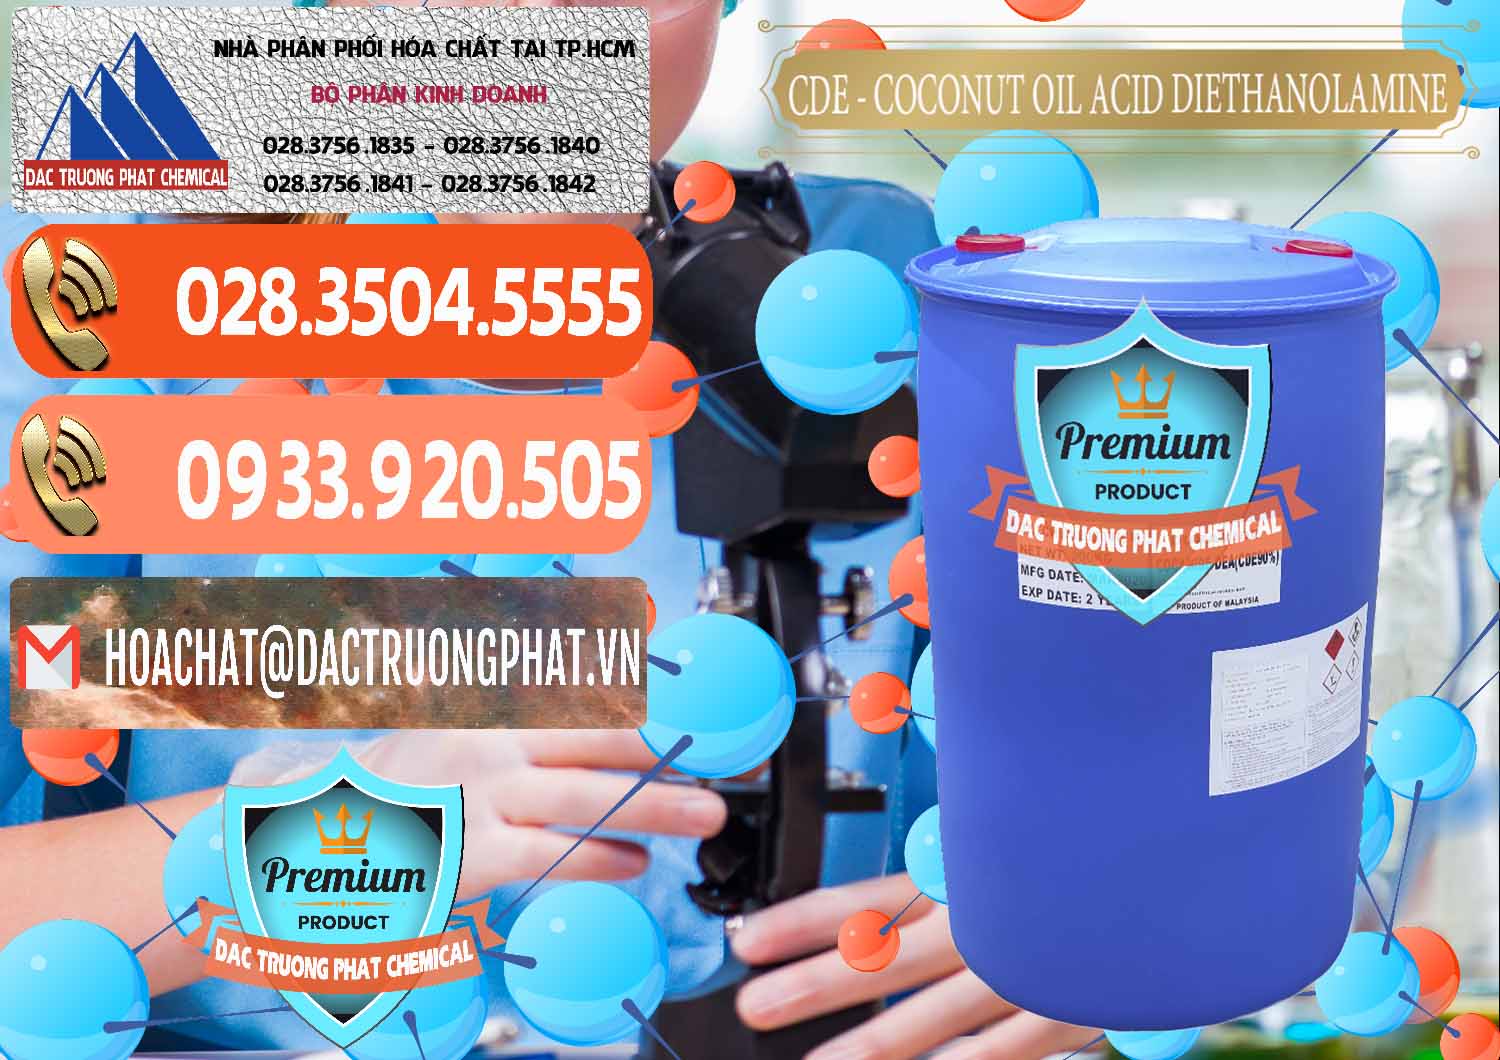 Cty bán và phân phối CDE - Coconut Oil Acid Diethanolamine Mã Lai Malaysia - 0311 - Đơn vị cung ứng và phân phối hóa chất tại TP.HCM - hoachatmientay.com